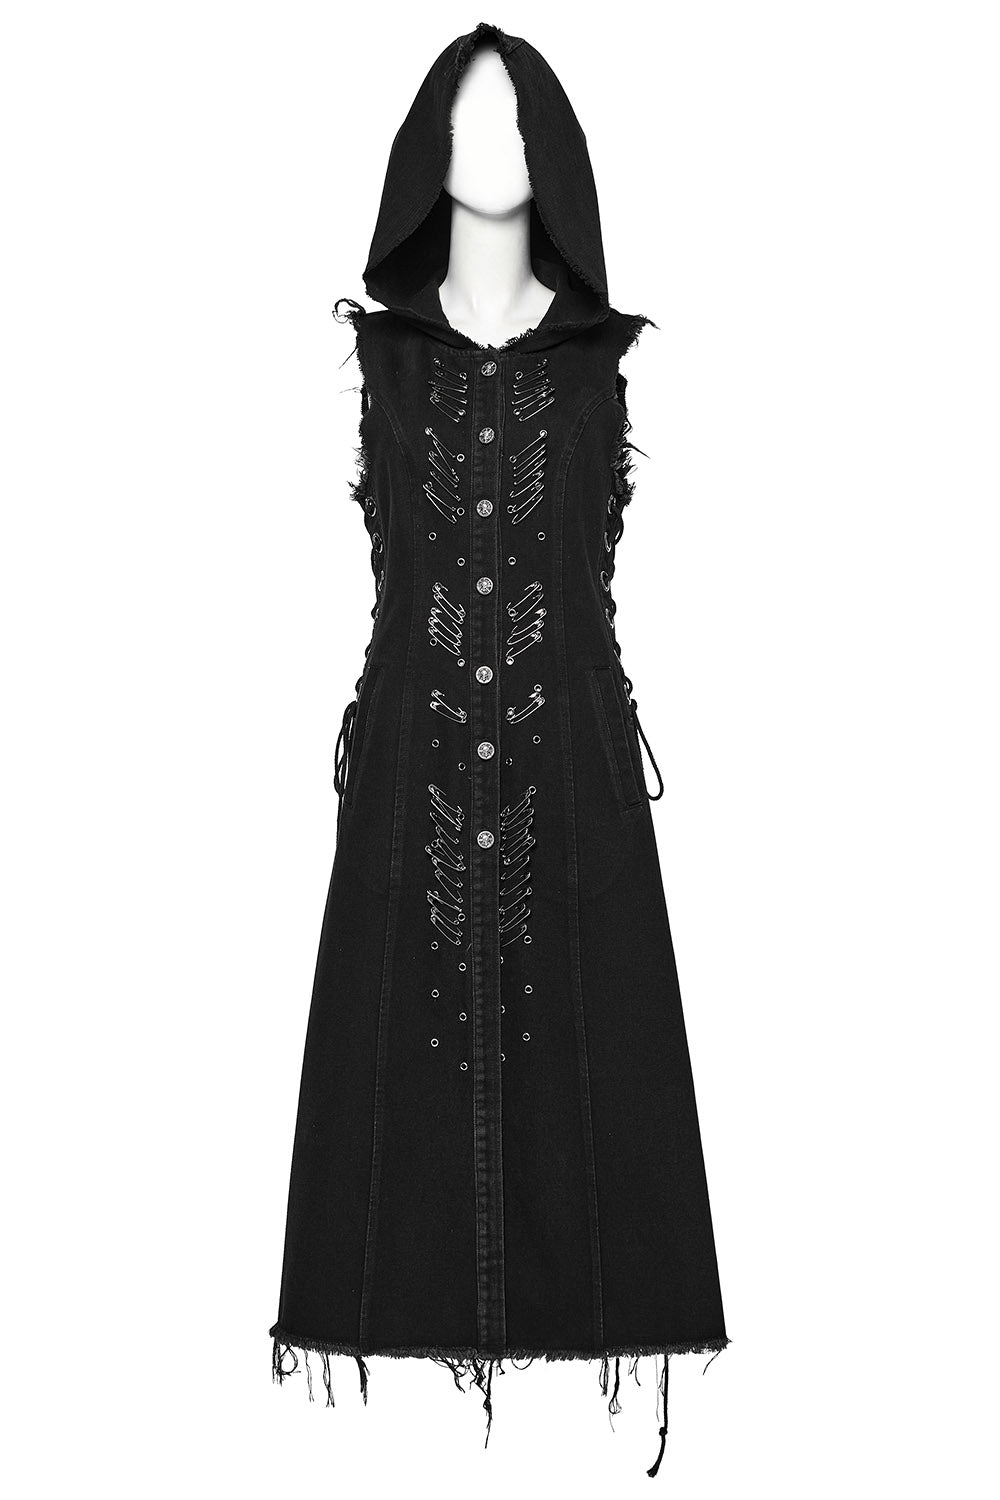 womens grunge goth apocalyptic sleeveless coat